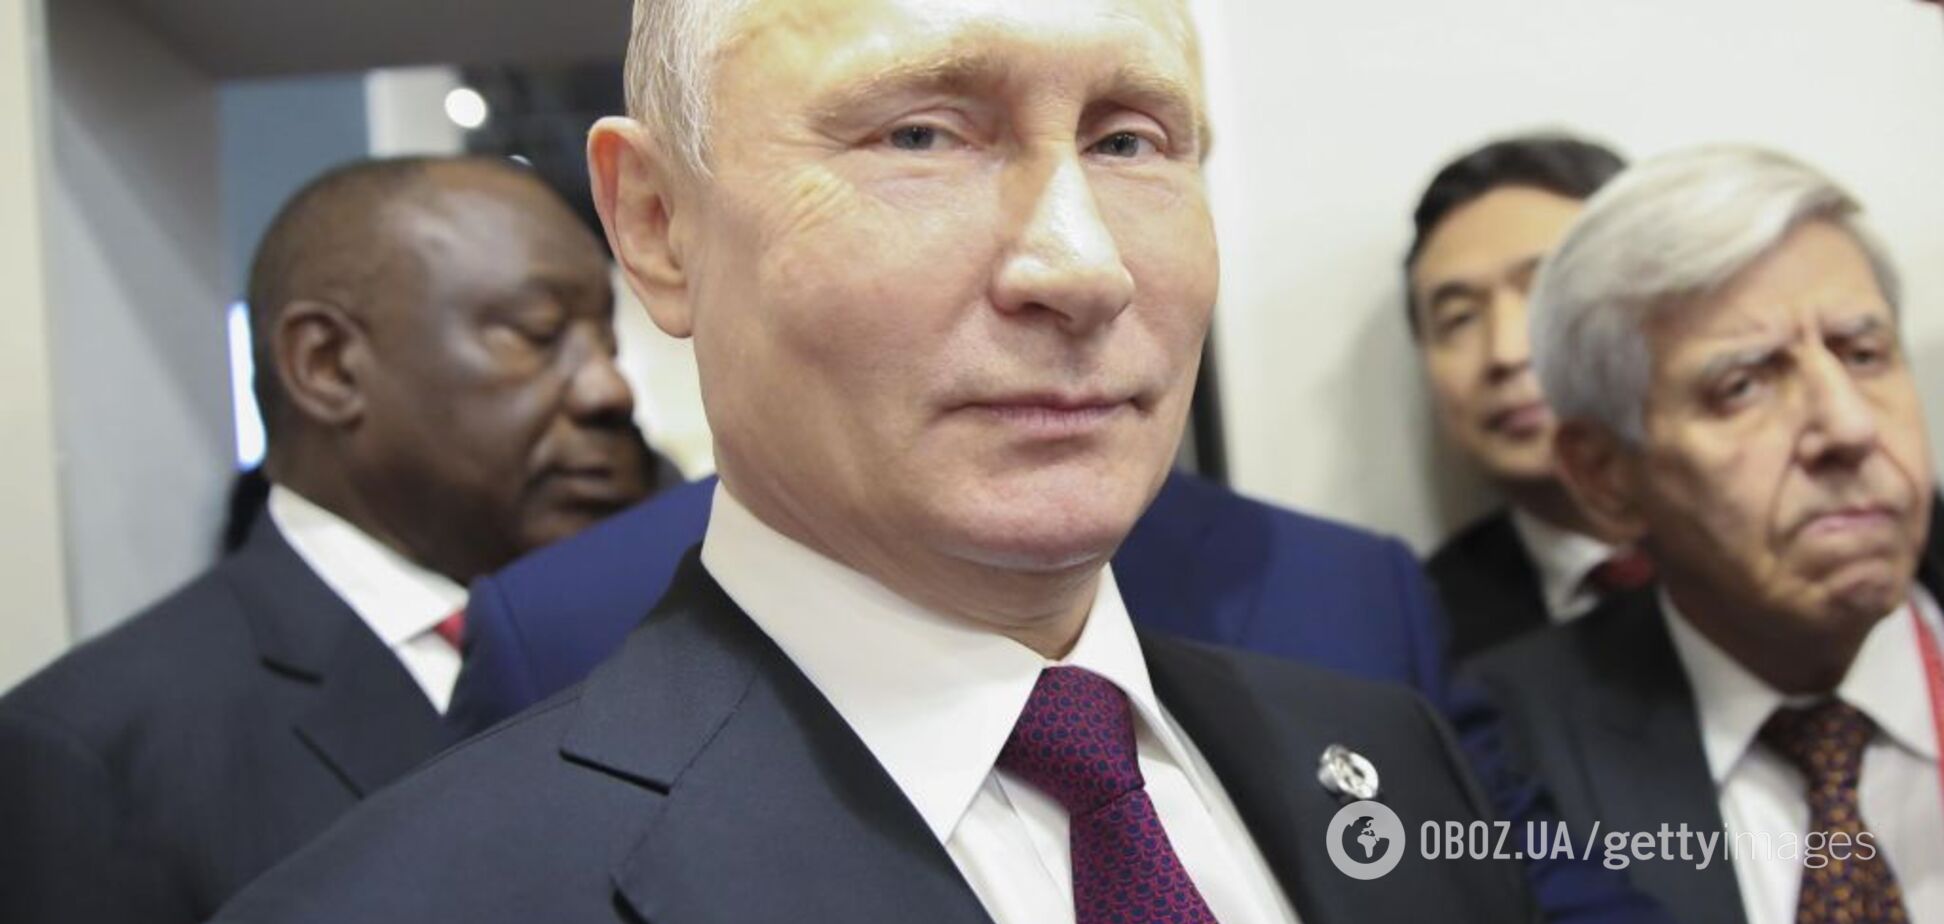 Путин обречен проиграть любому 'новому лицу'